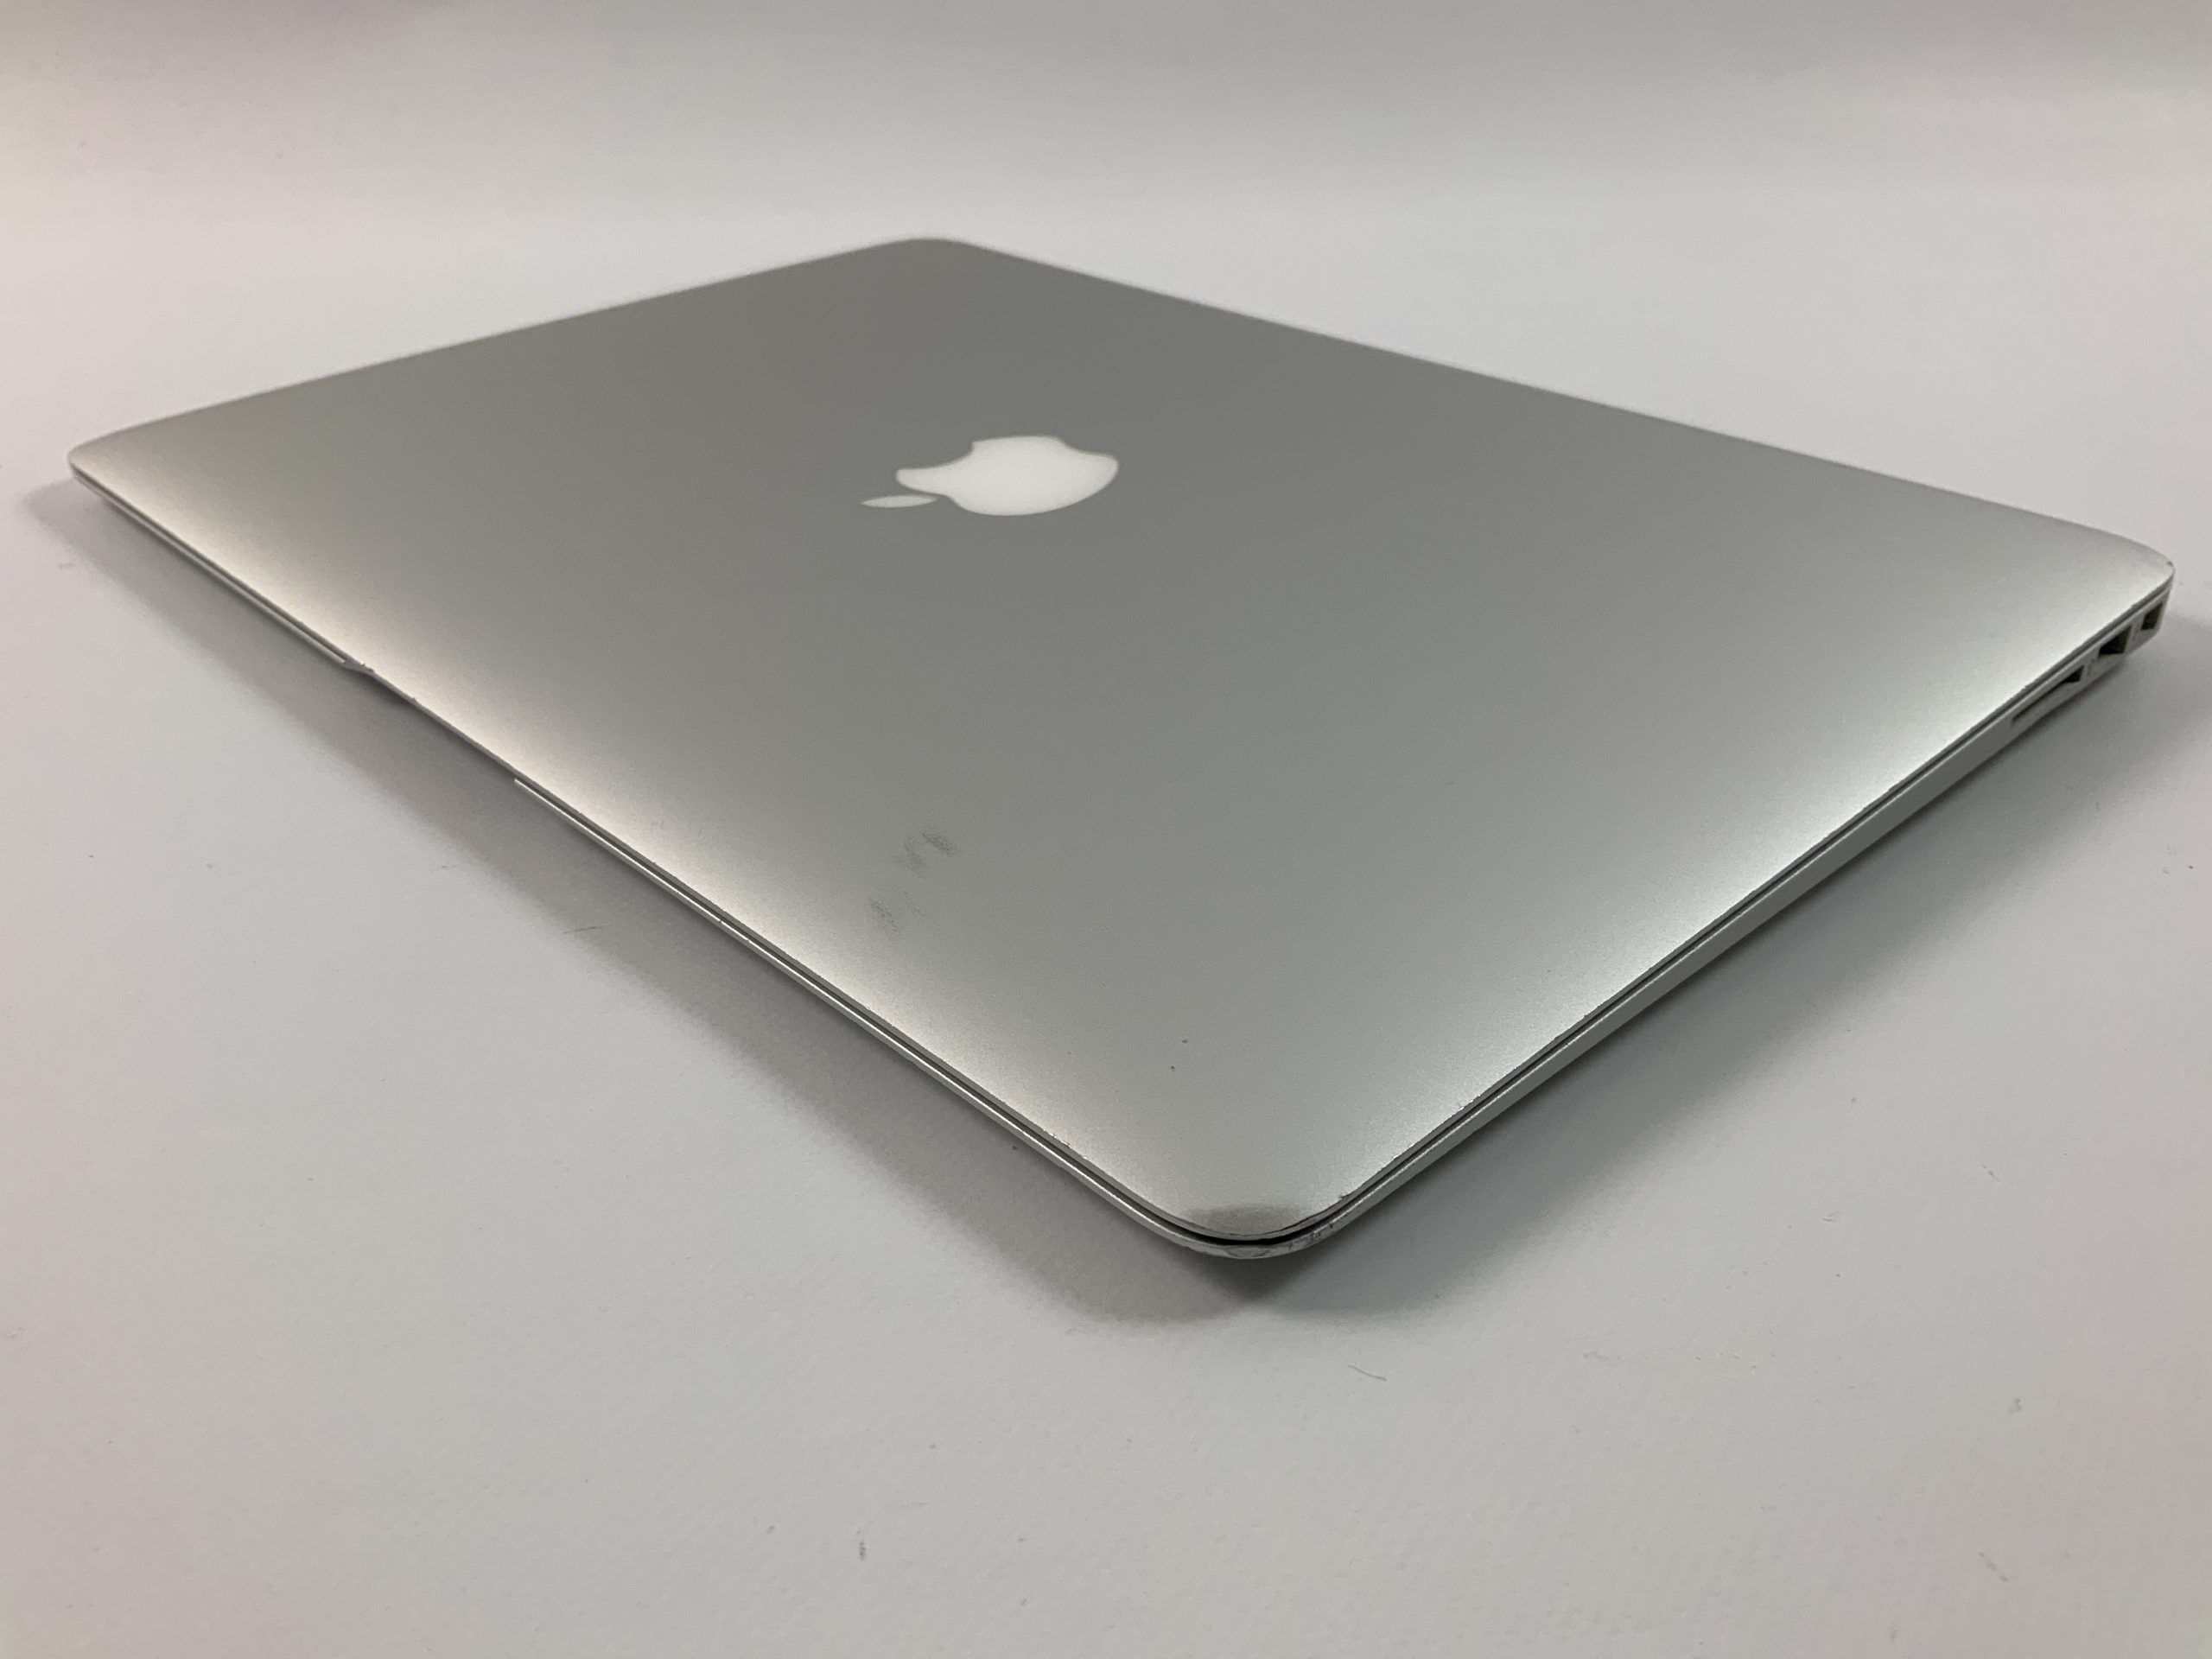 MacBook Air 13" Mid 2017 (Intel Core i5 1.8 GHz 8 GB RAM 256 GB SSD), Intel Core i5 1.8 GHz, 8 GB RAM, 256 GB SSD, image 3